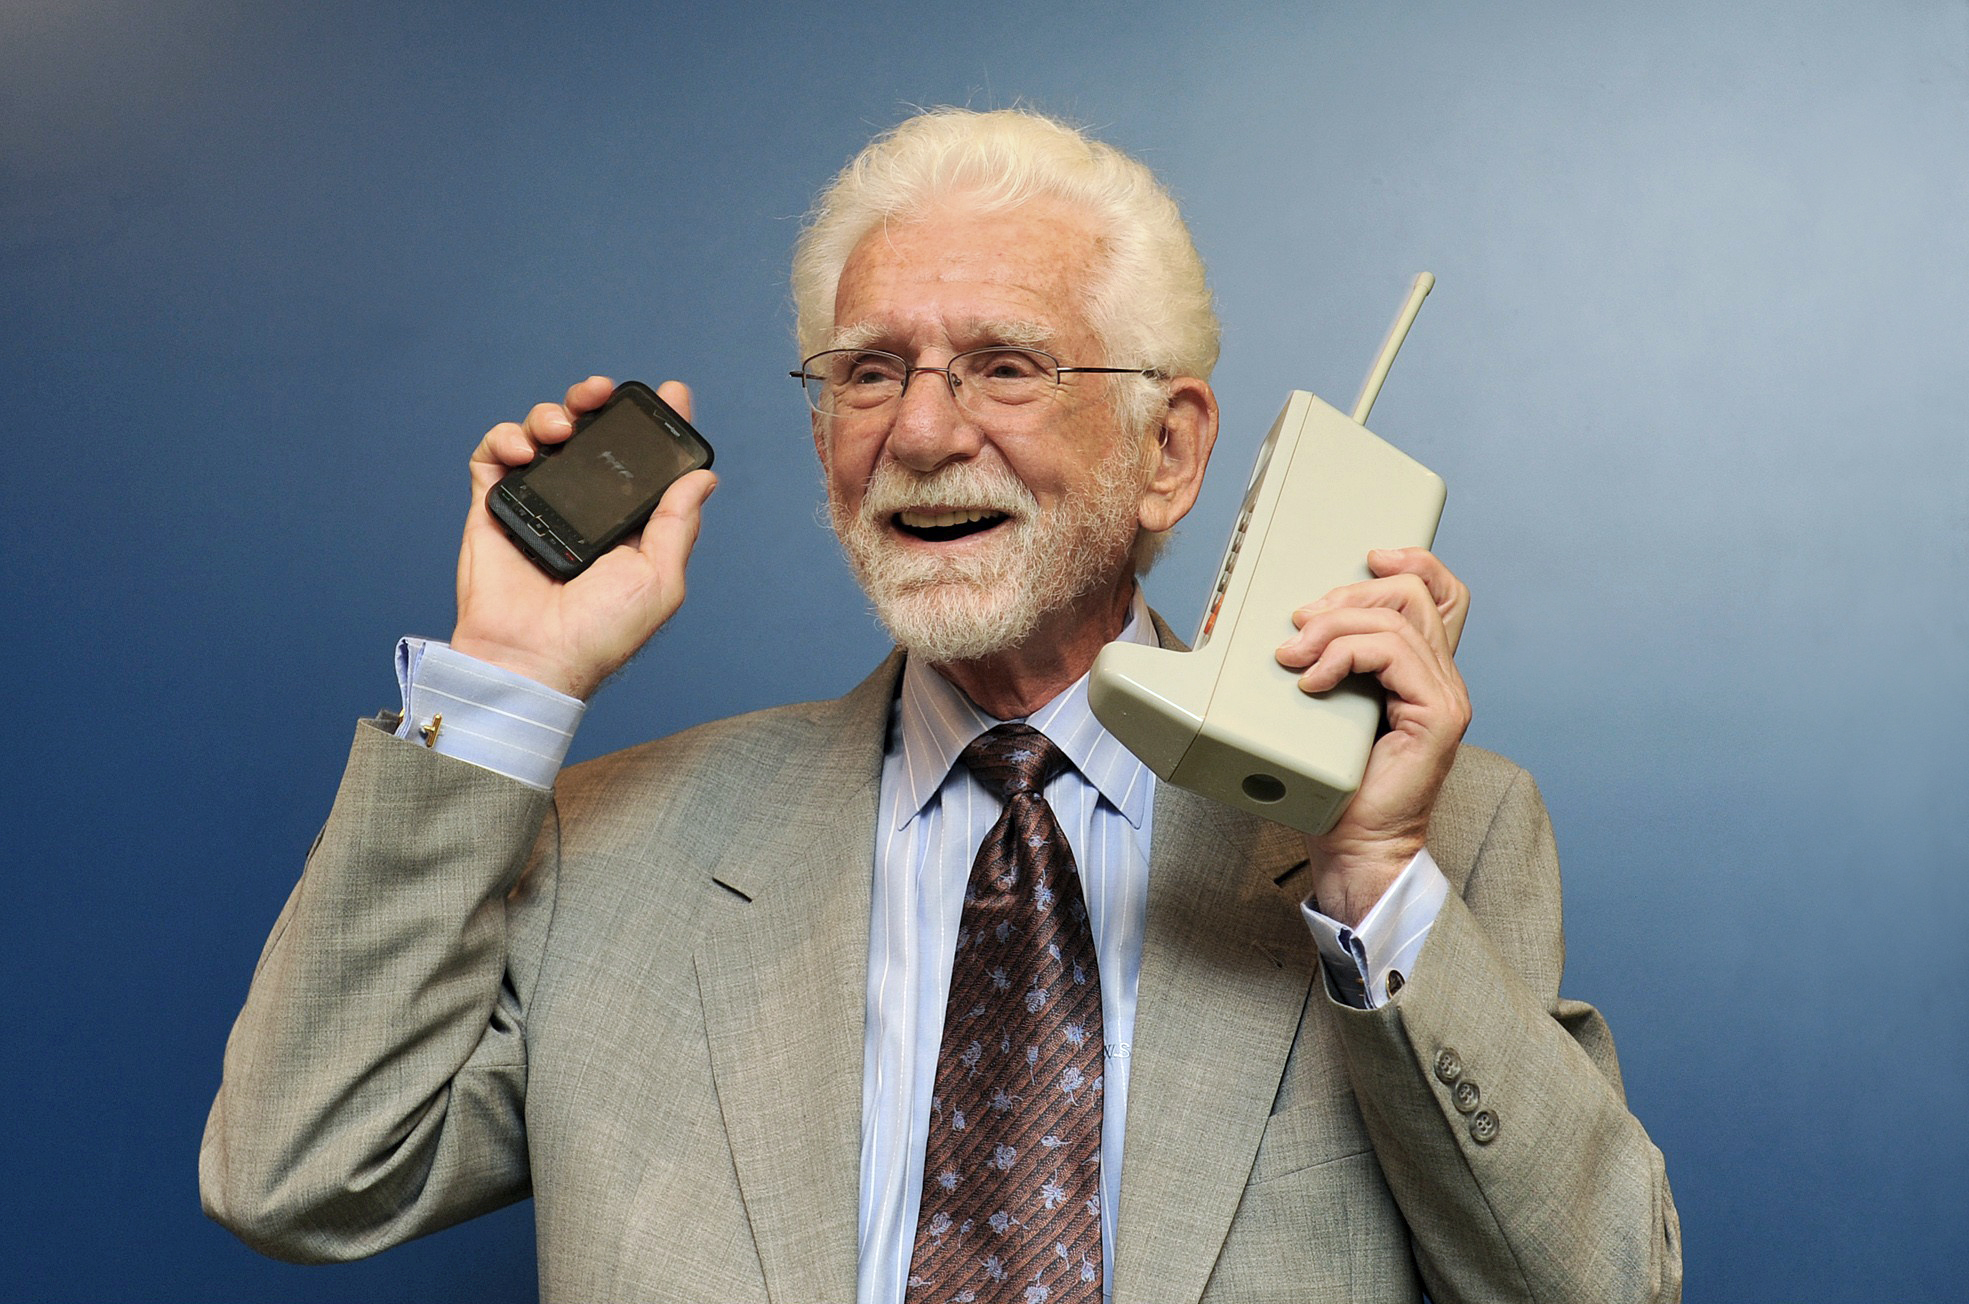  El teléfono celular, a 43 años de la primera llamada